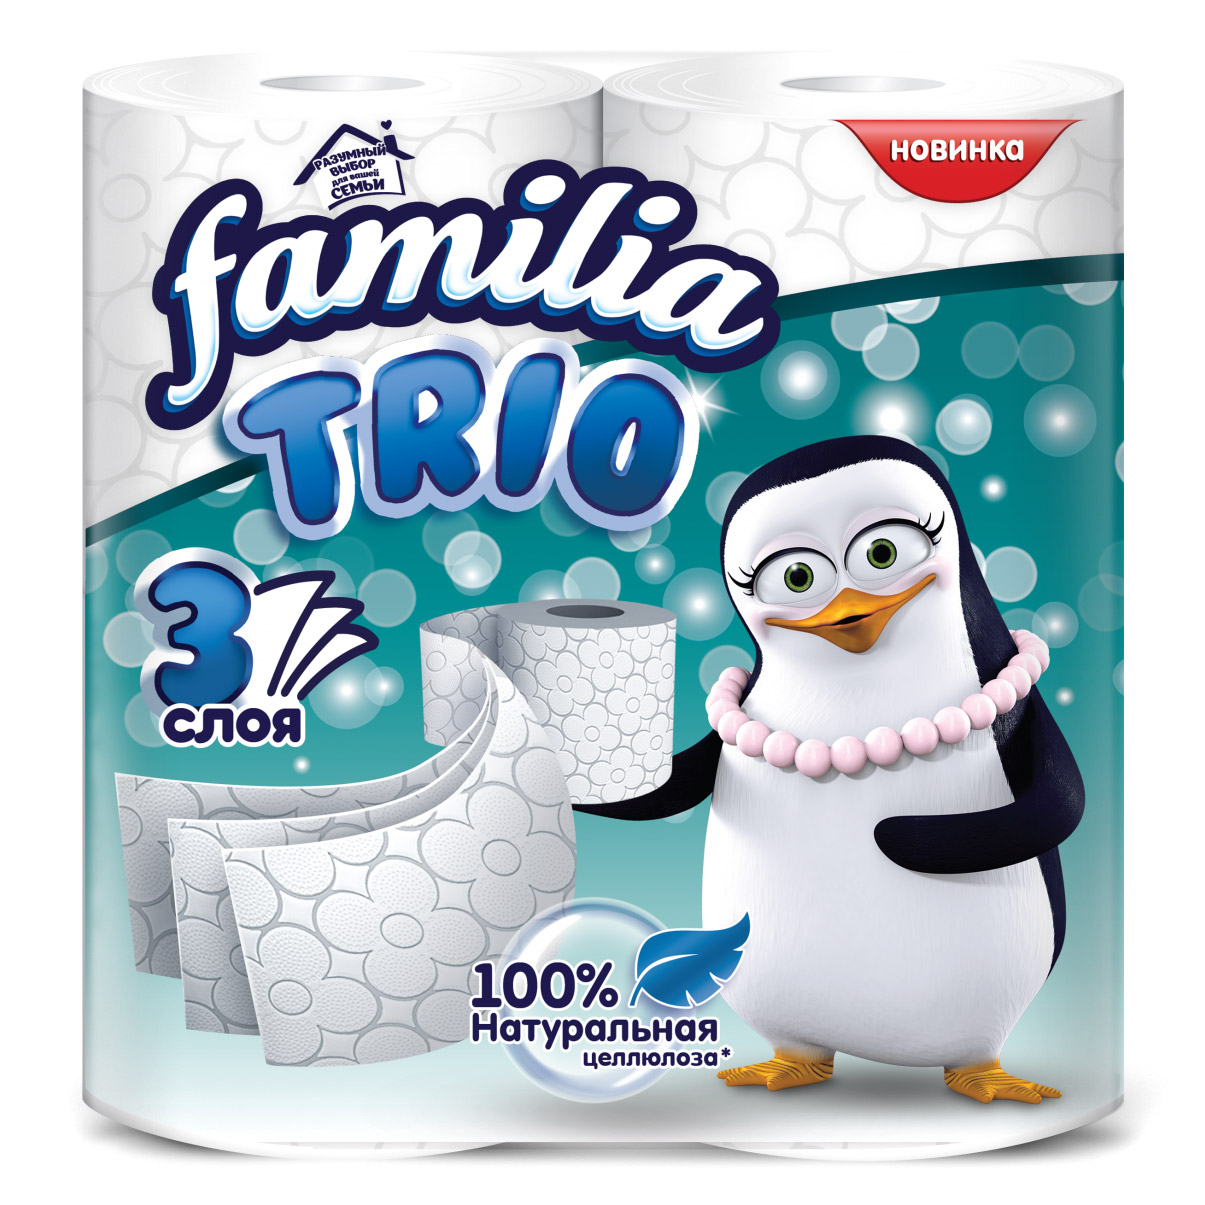 Туалетная бумага Familia Trio трехслойная 4 шт туалетная бумага familia plus 8 шт